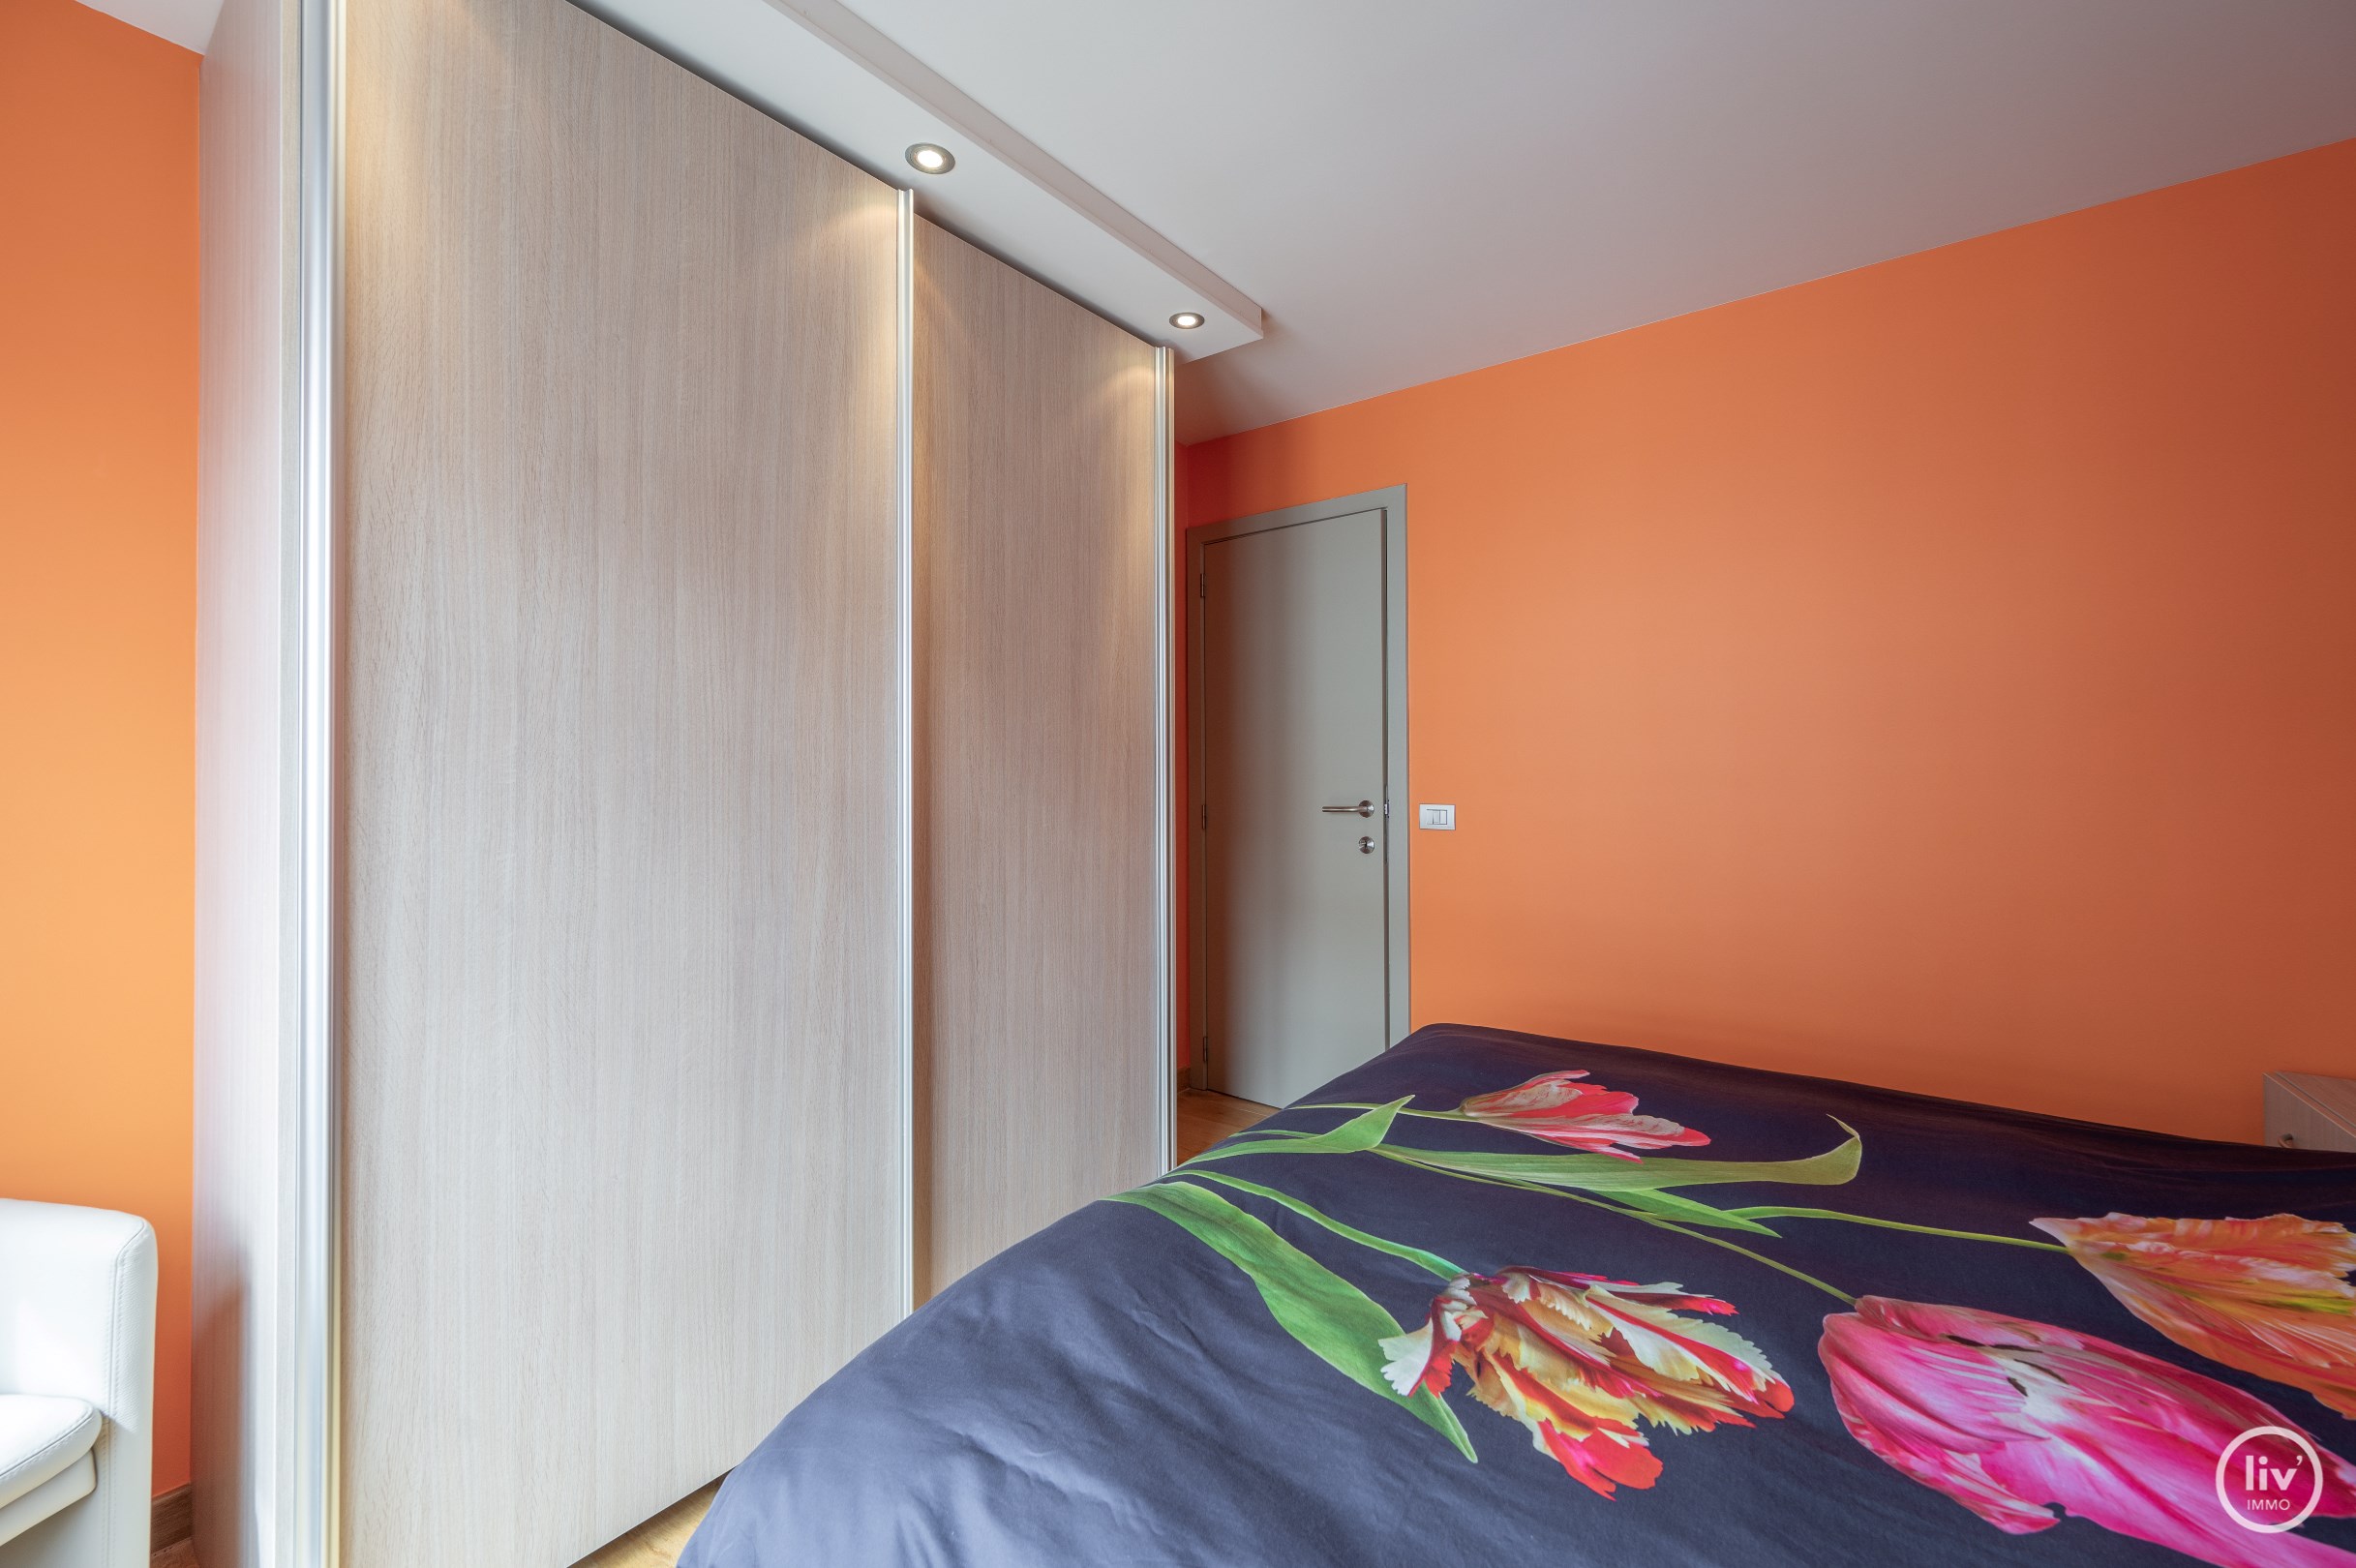 Prachtig HOEKappartement met 3 slaapkamers gelegen in een recente residentie op de Dumortierlaan te Knokke. 